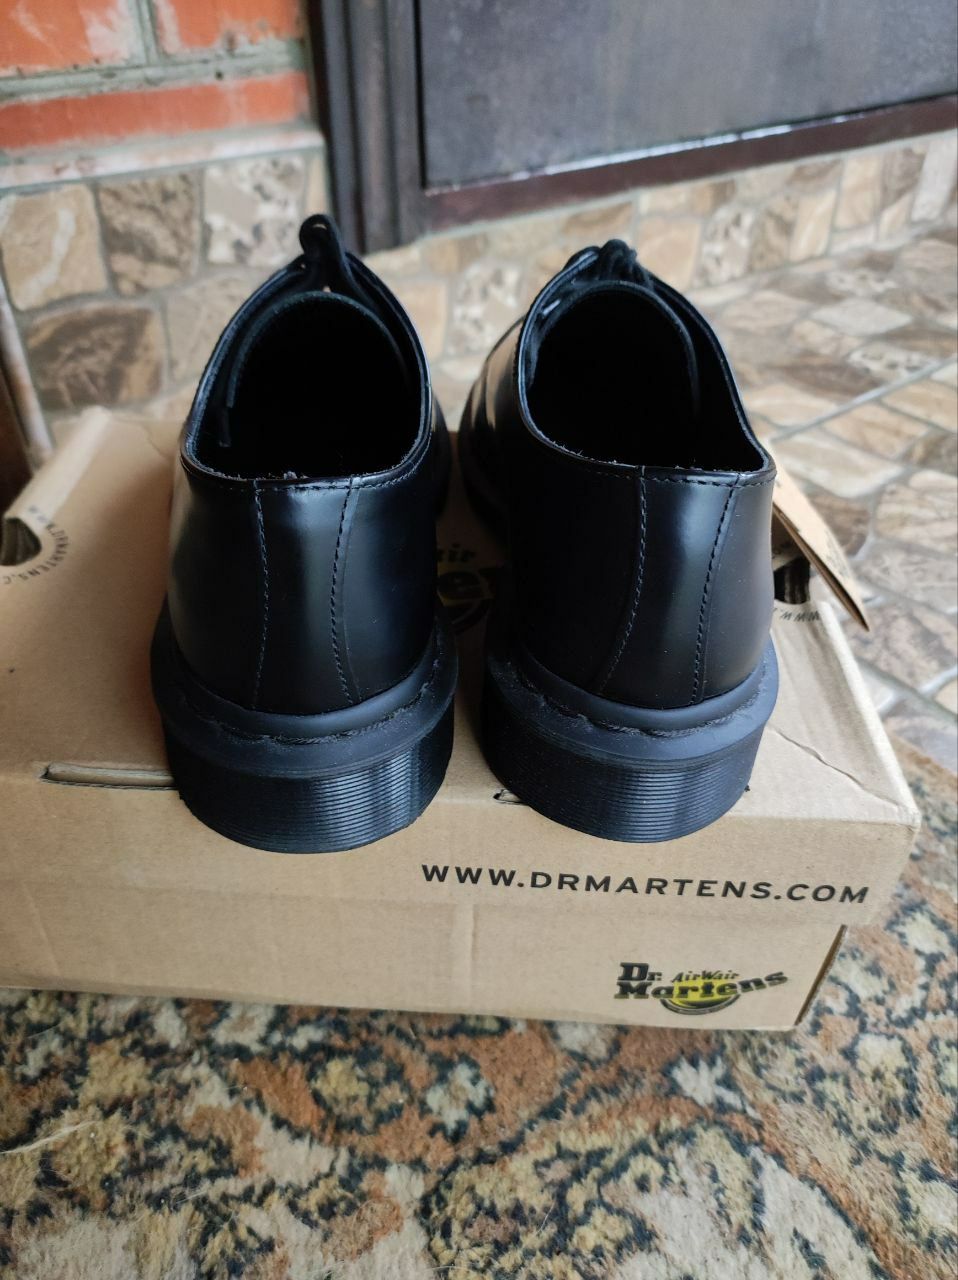 Dr martens 1461 mono black мартенсы мартинсы ботинки туфли